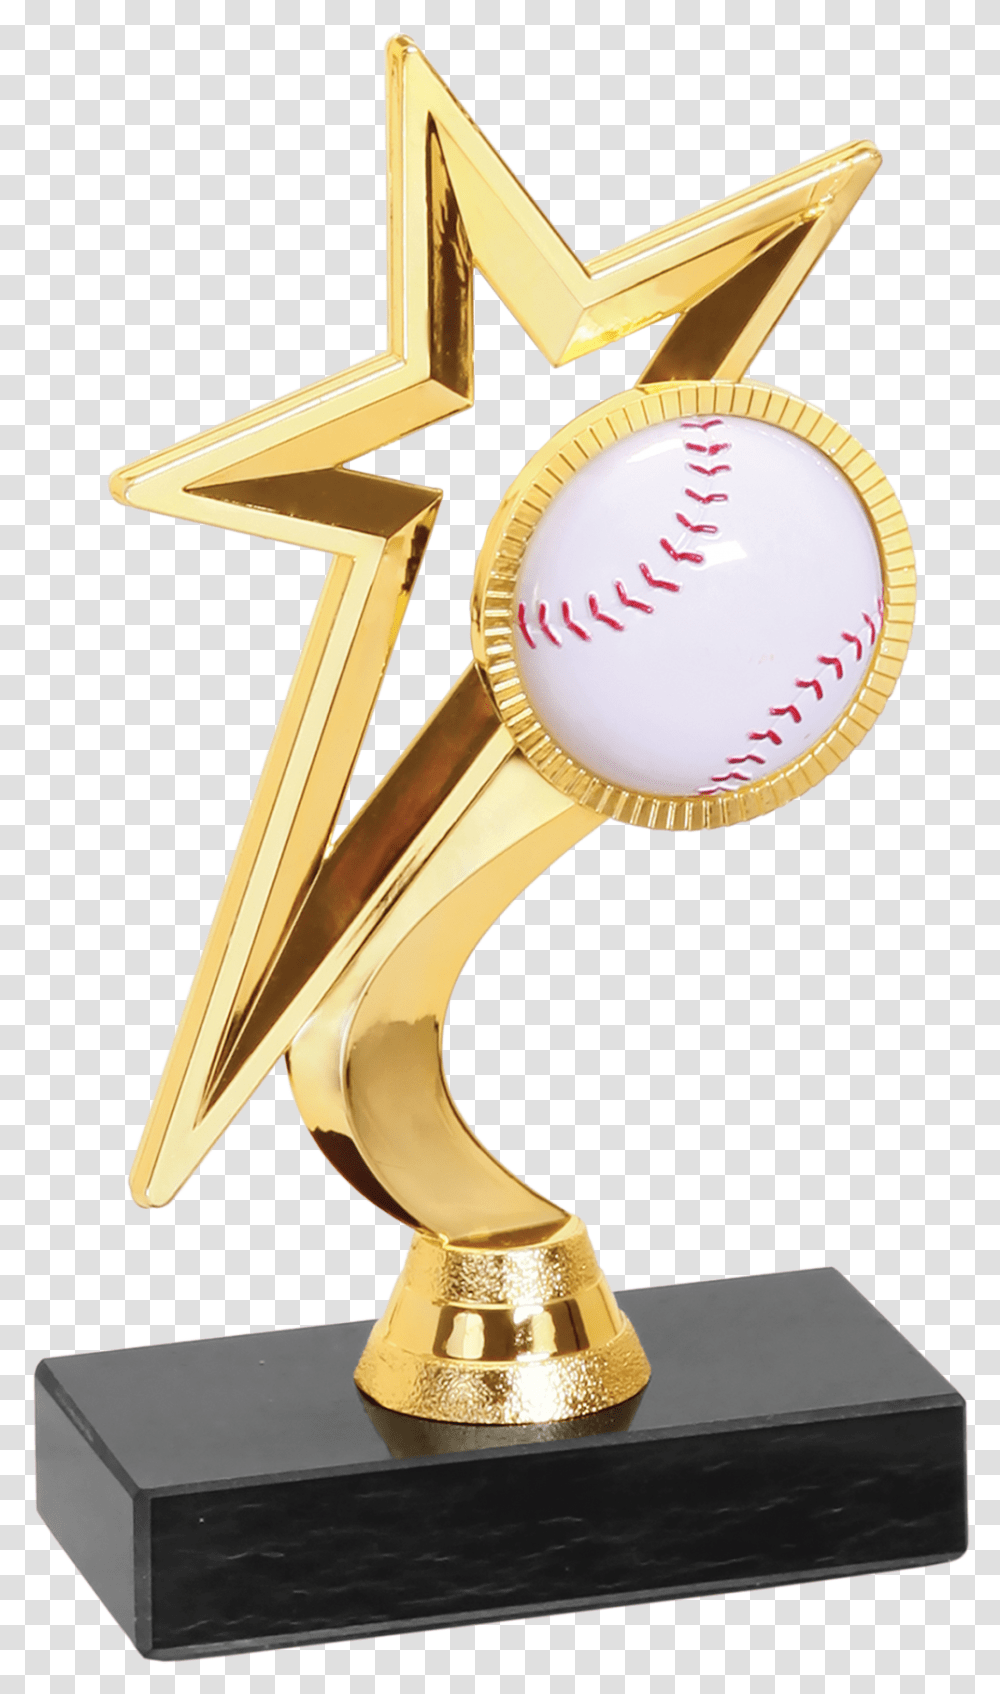 Gold Star Baseballsoftball Figure Trophy Trophy, Sink Faucet, Cross Transparent Png